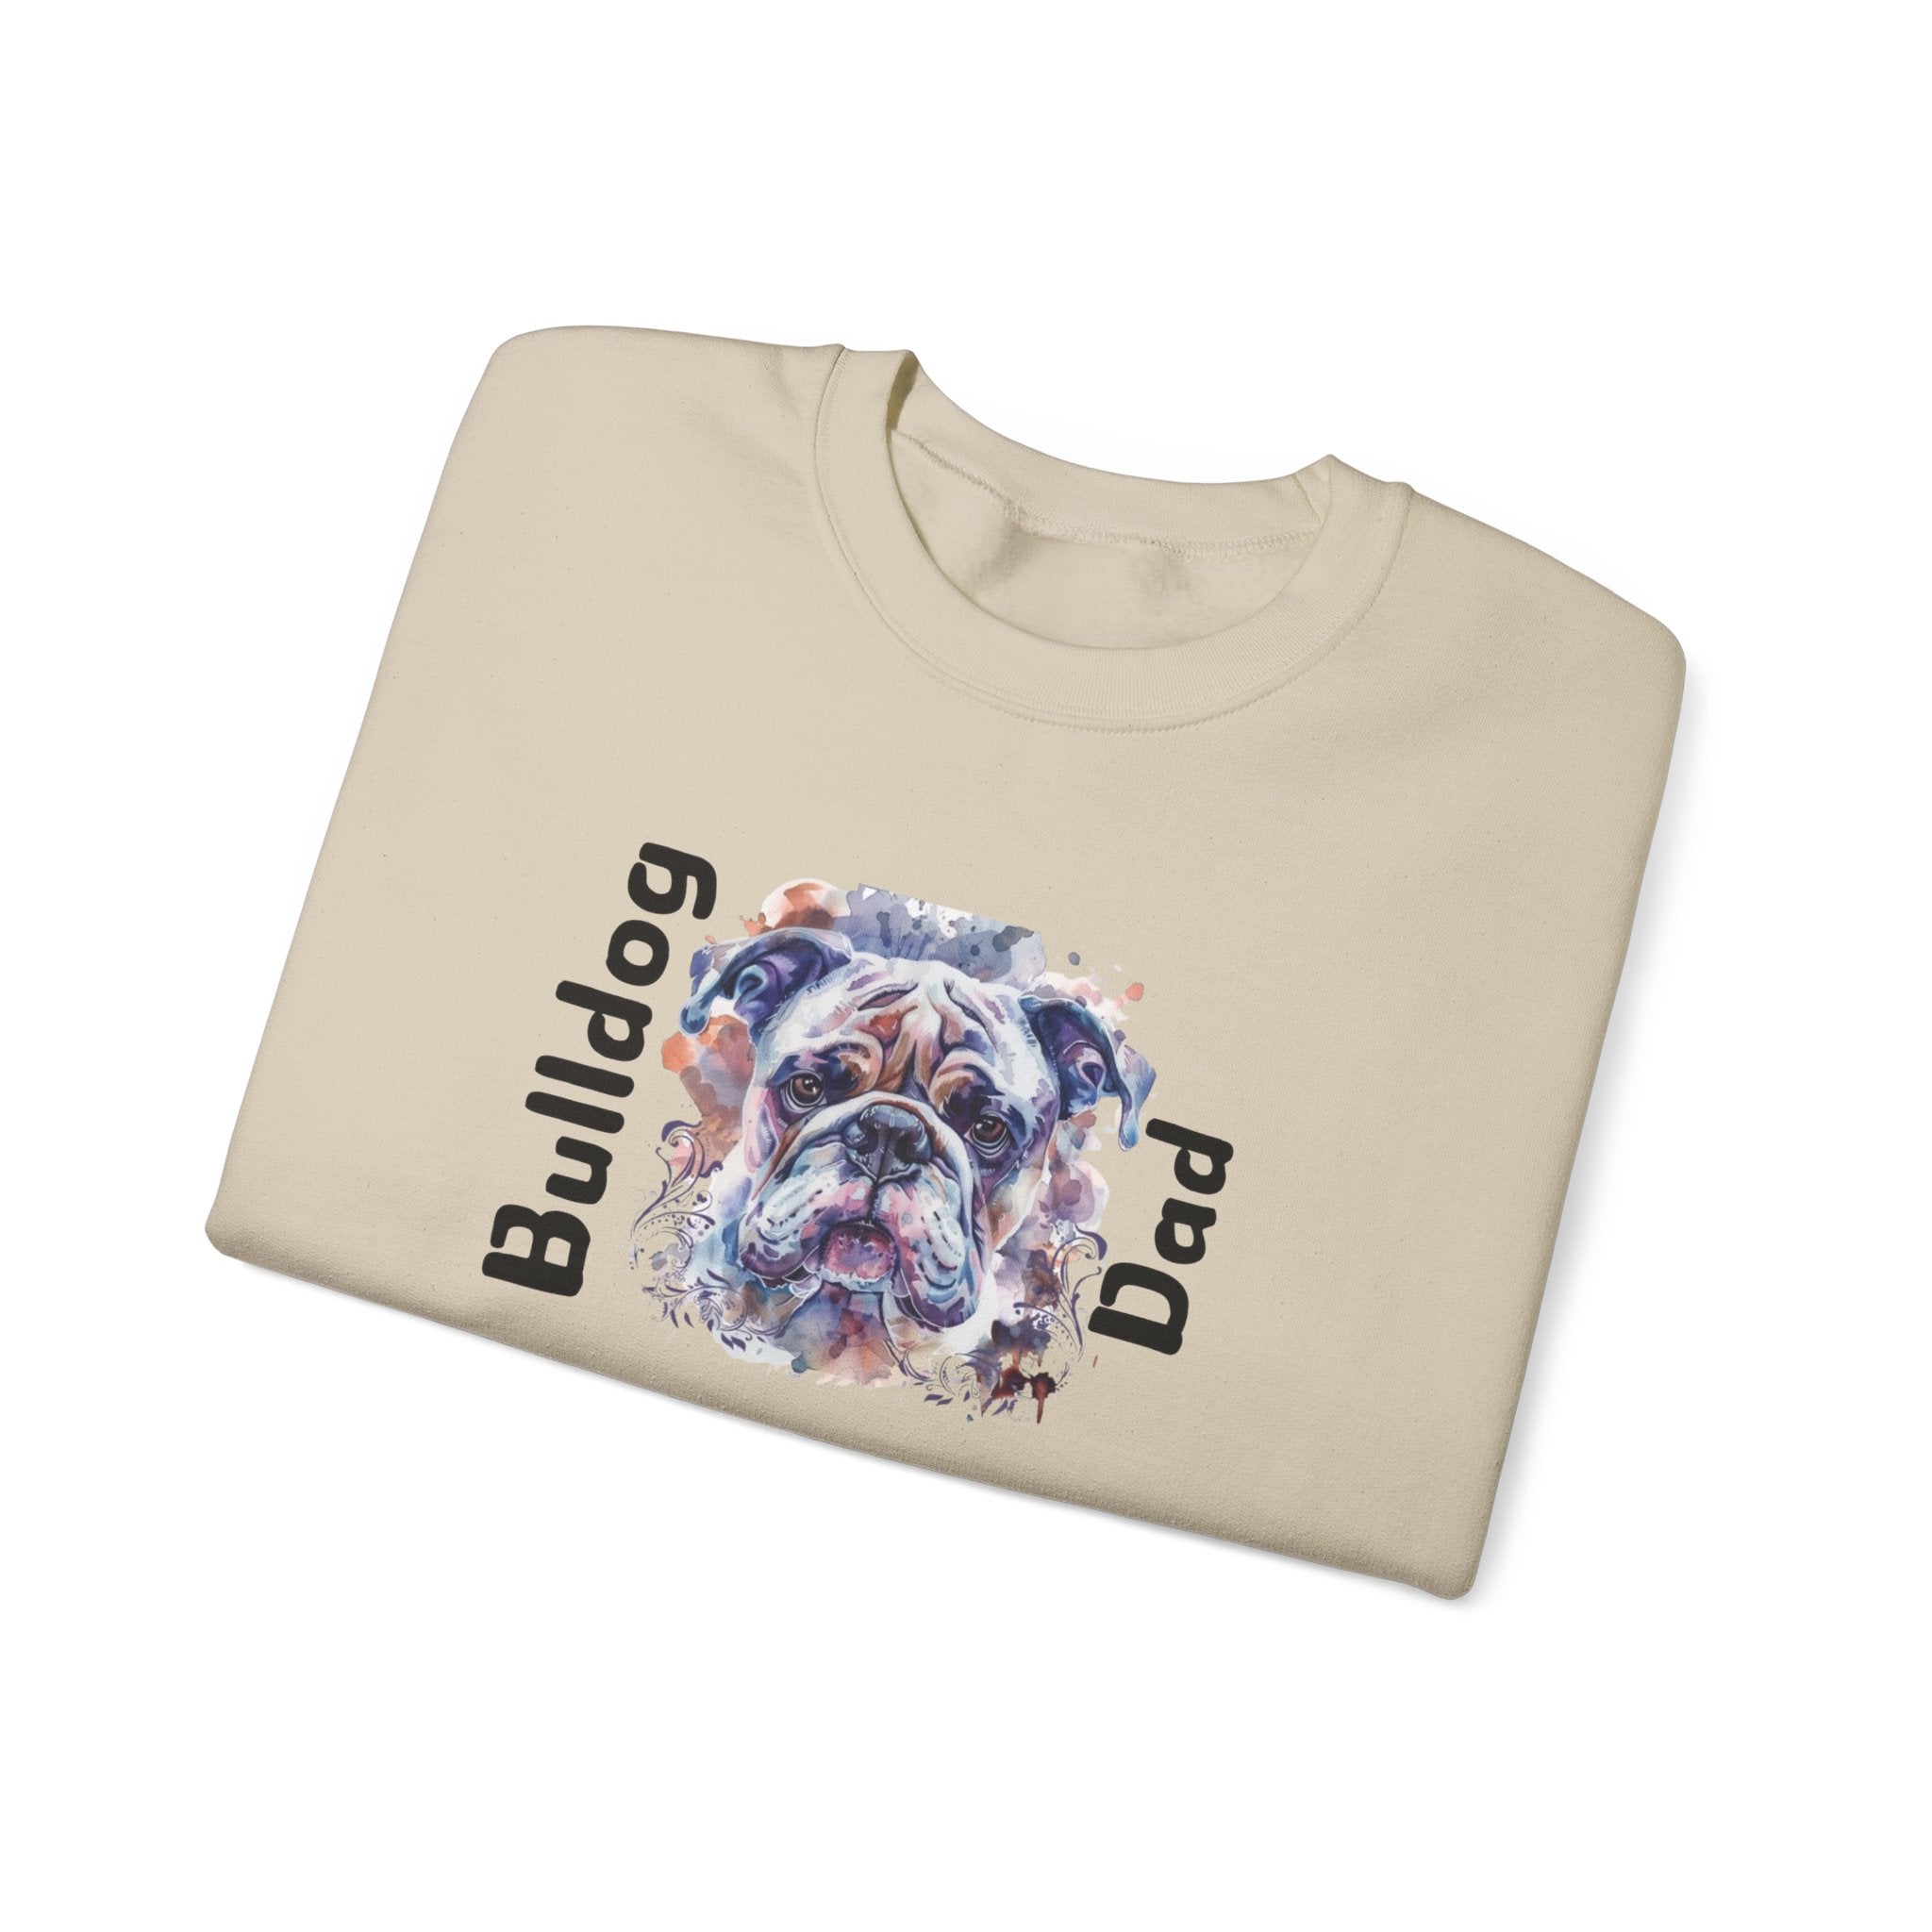 "Bulldog Dad" crew neck sweatshirt (English)